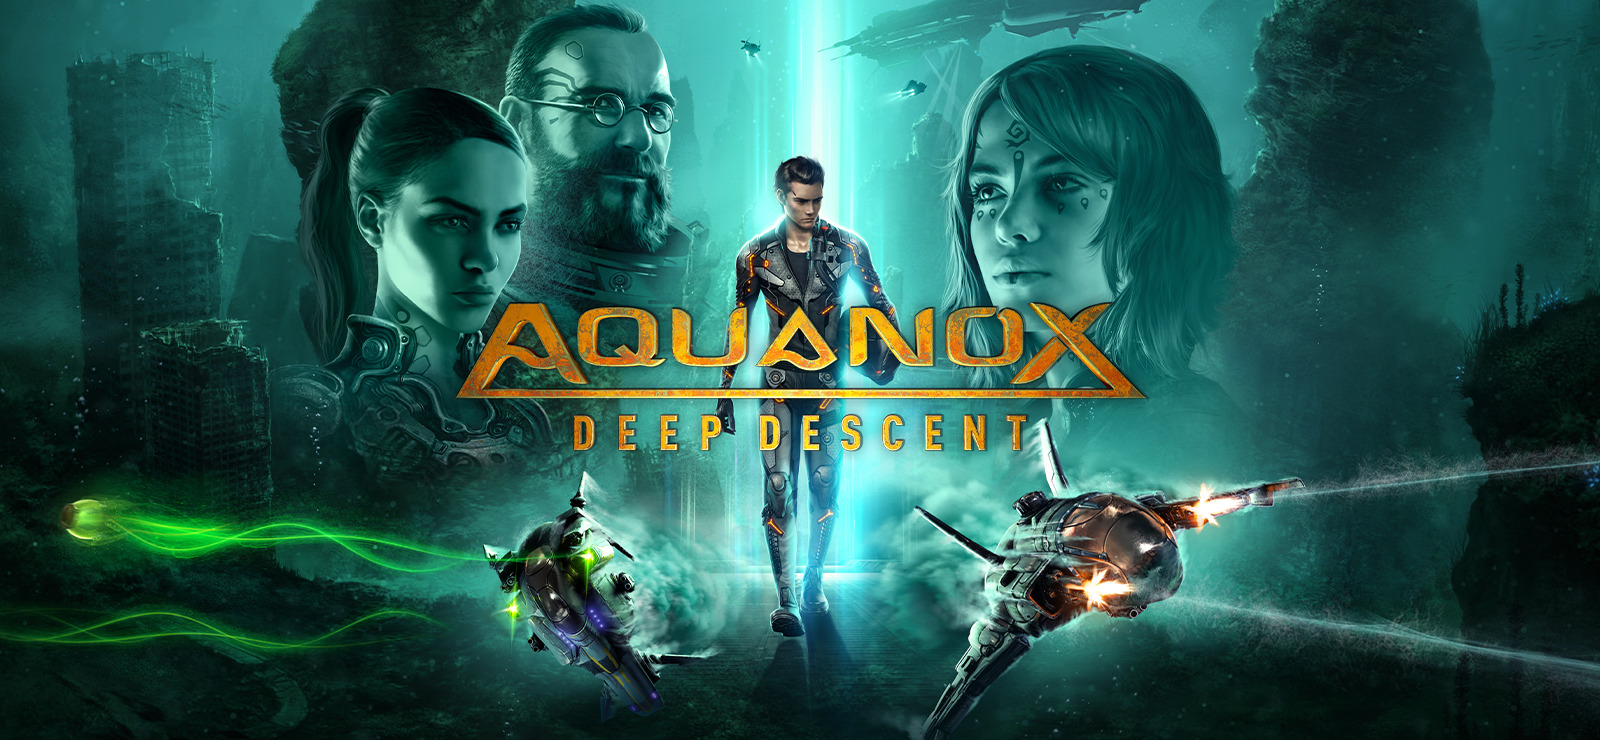 download aquanox deep descent collector